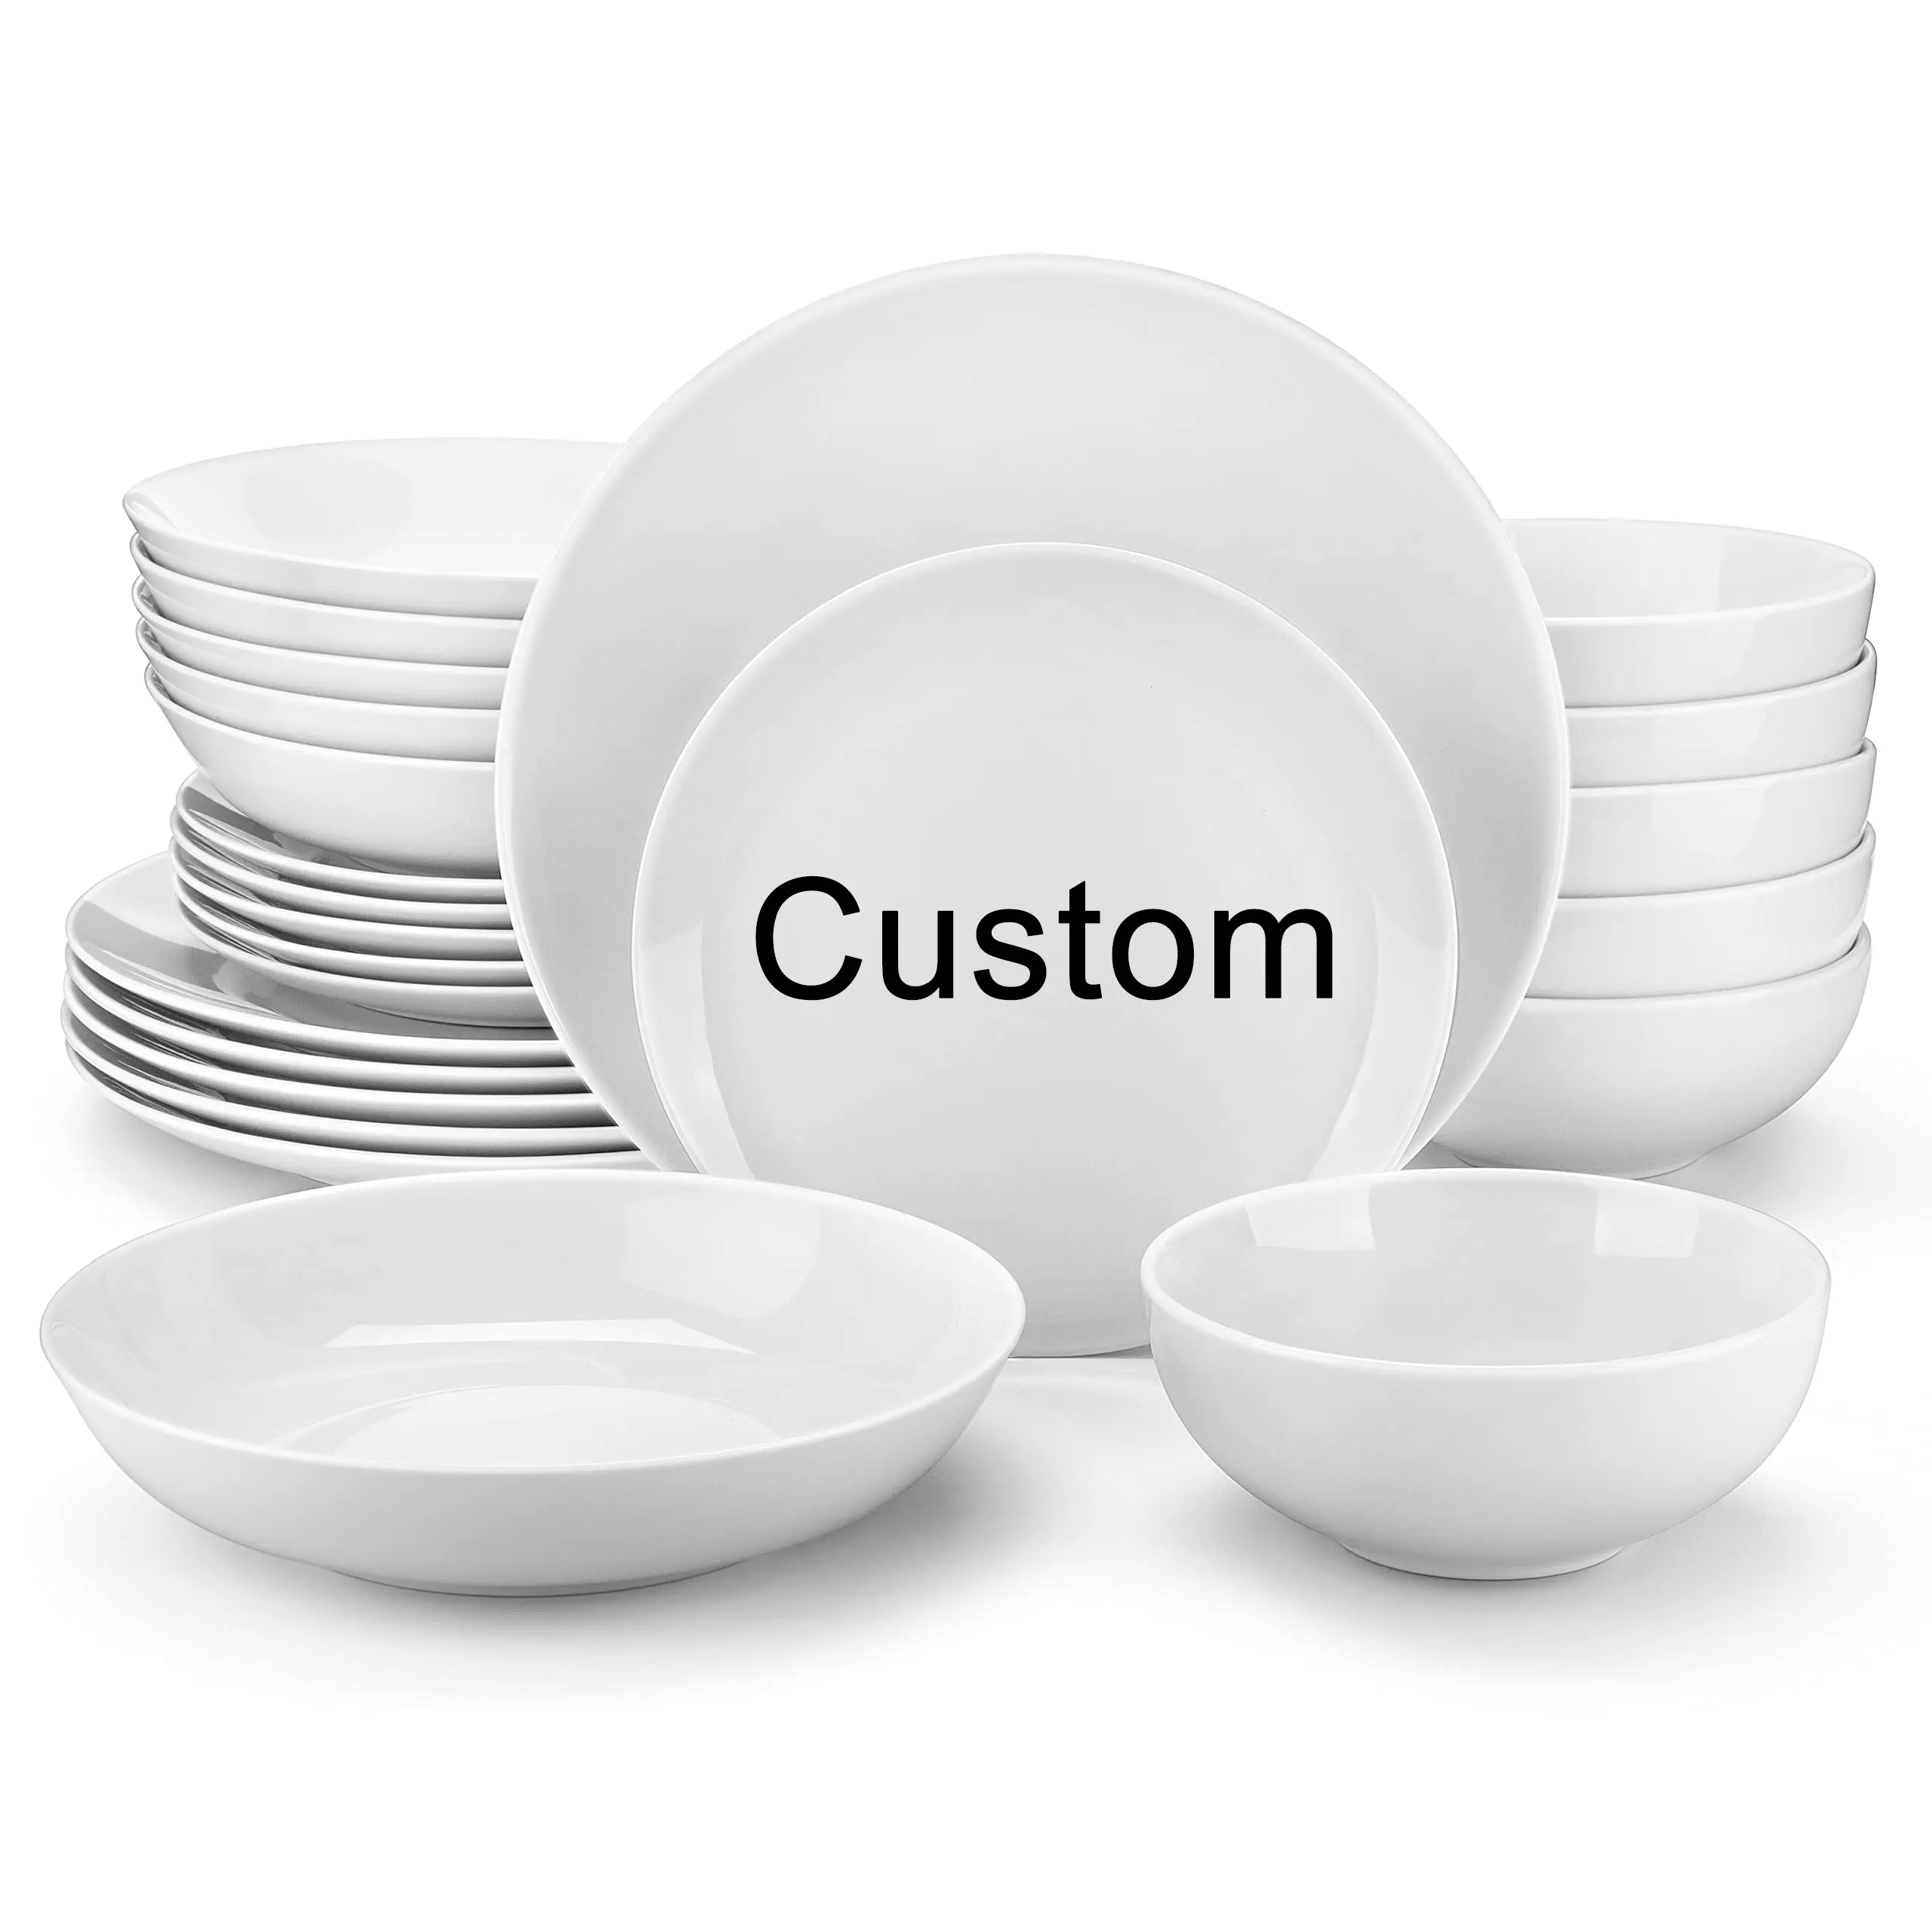 Özel özelleştirilebilir restoran logosu beyaz porselen yemek tabakları Set yuvarlak yemekler restoranlar için Plato seramik plakalar olabilir